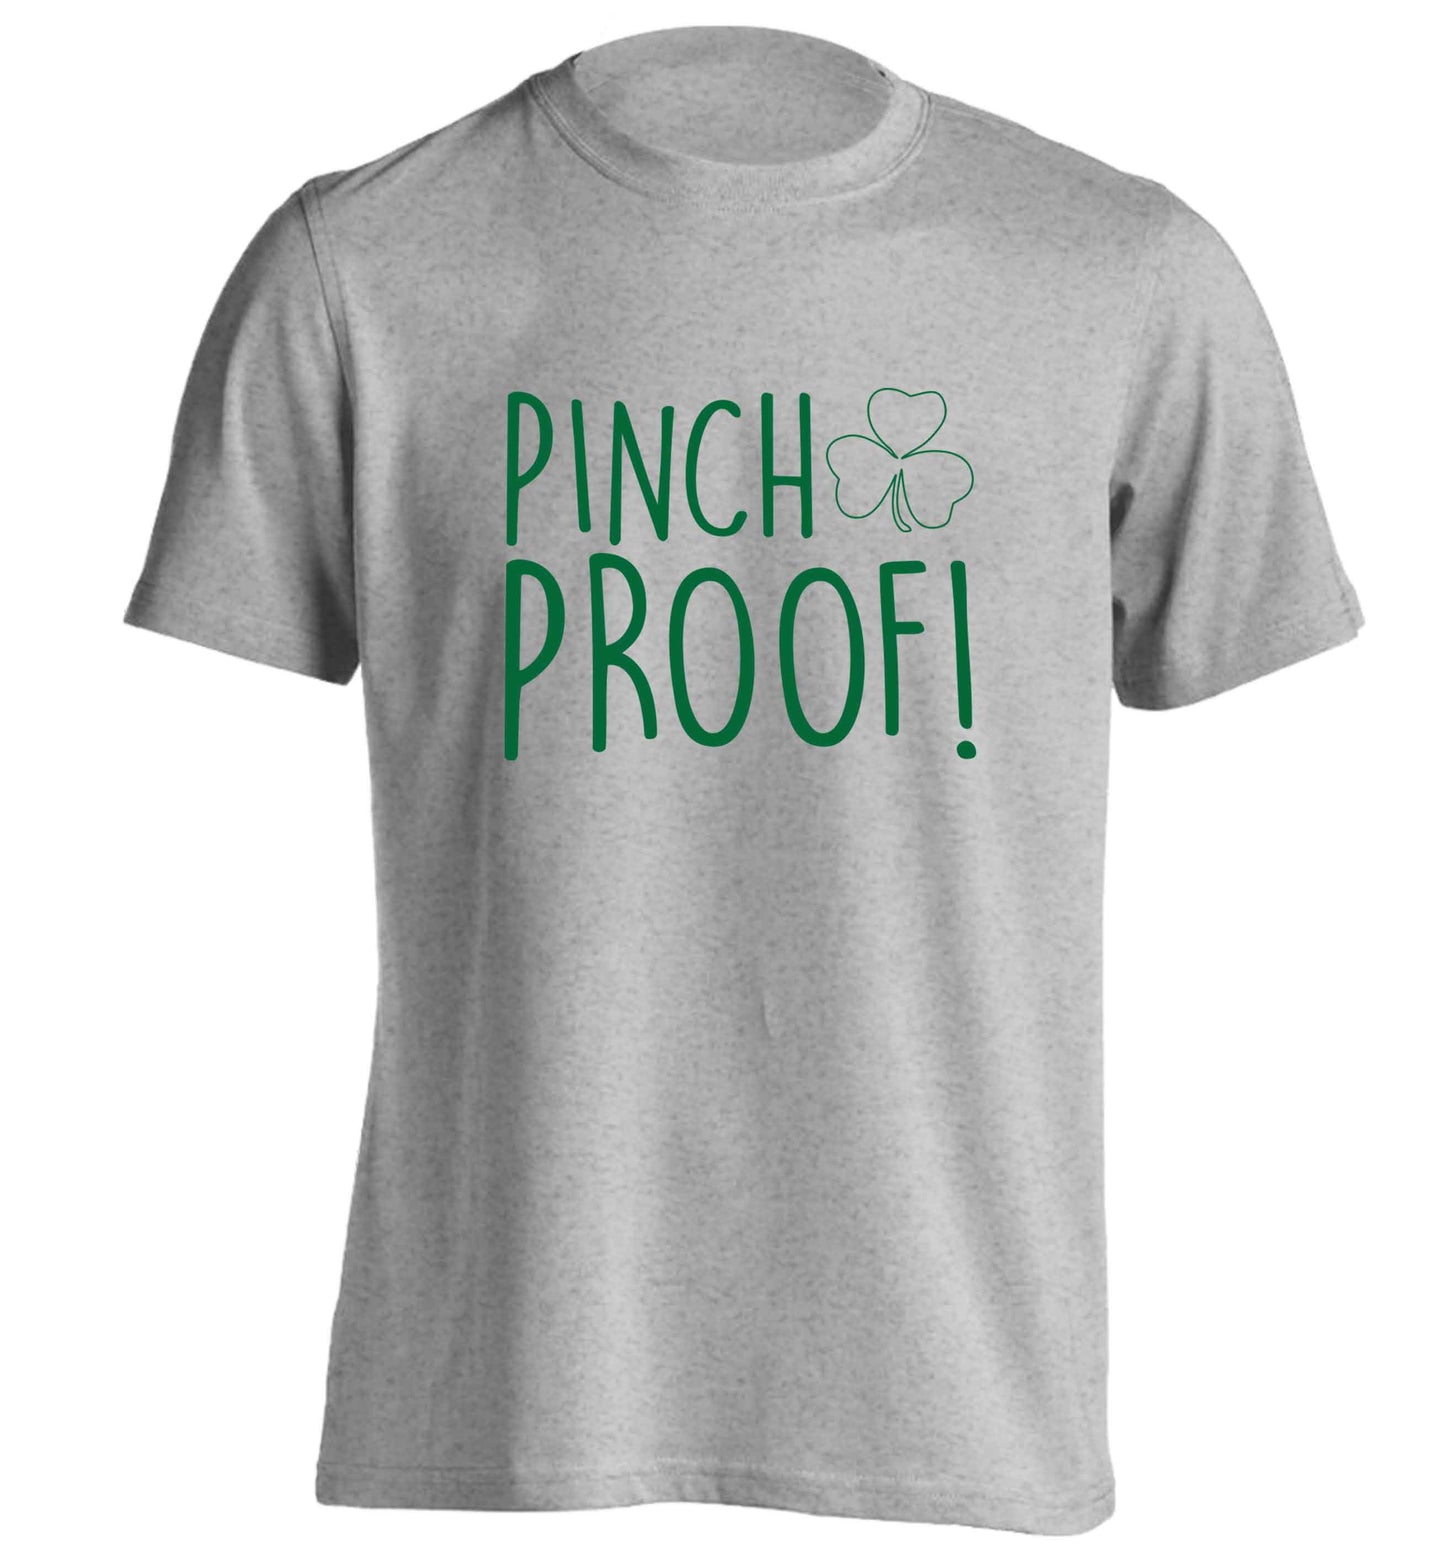 Pinch Proof adults unisex grey Tshirt 2XL